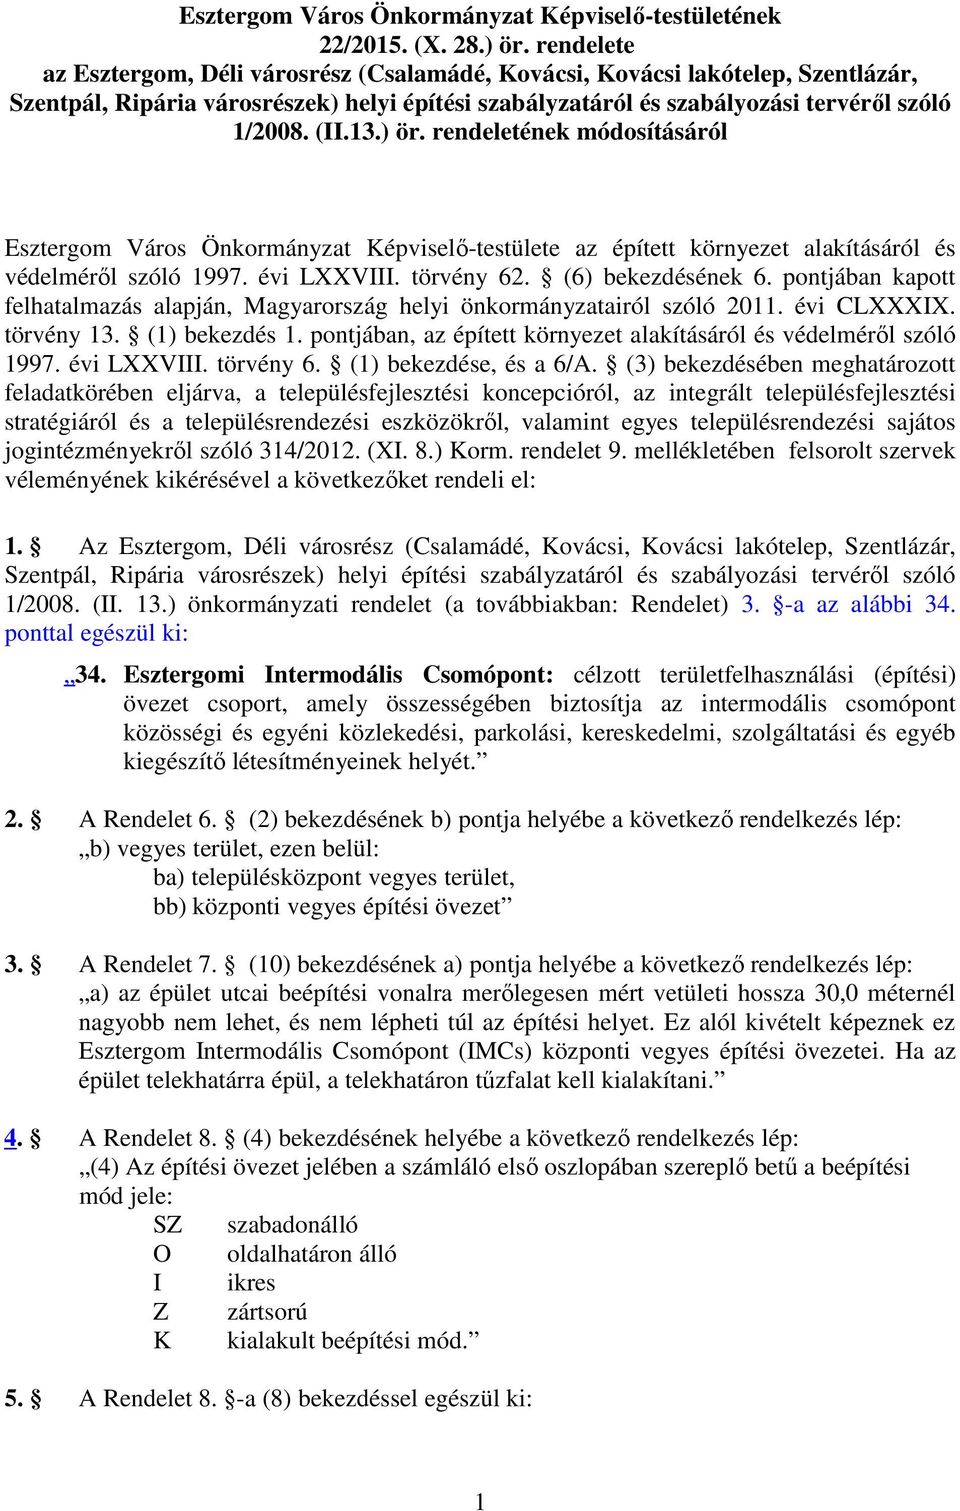 ) ör. rendeletének módosításáról Esztergom Város Önkormányzat Képviselő-testülete az épített környezet alakításáról és védelméről szóló 1997. évi LXXVIII. törvény 62. (6) bekezdésének 6.